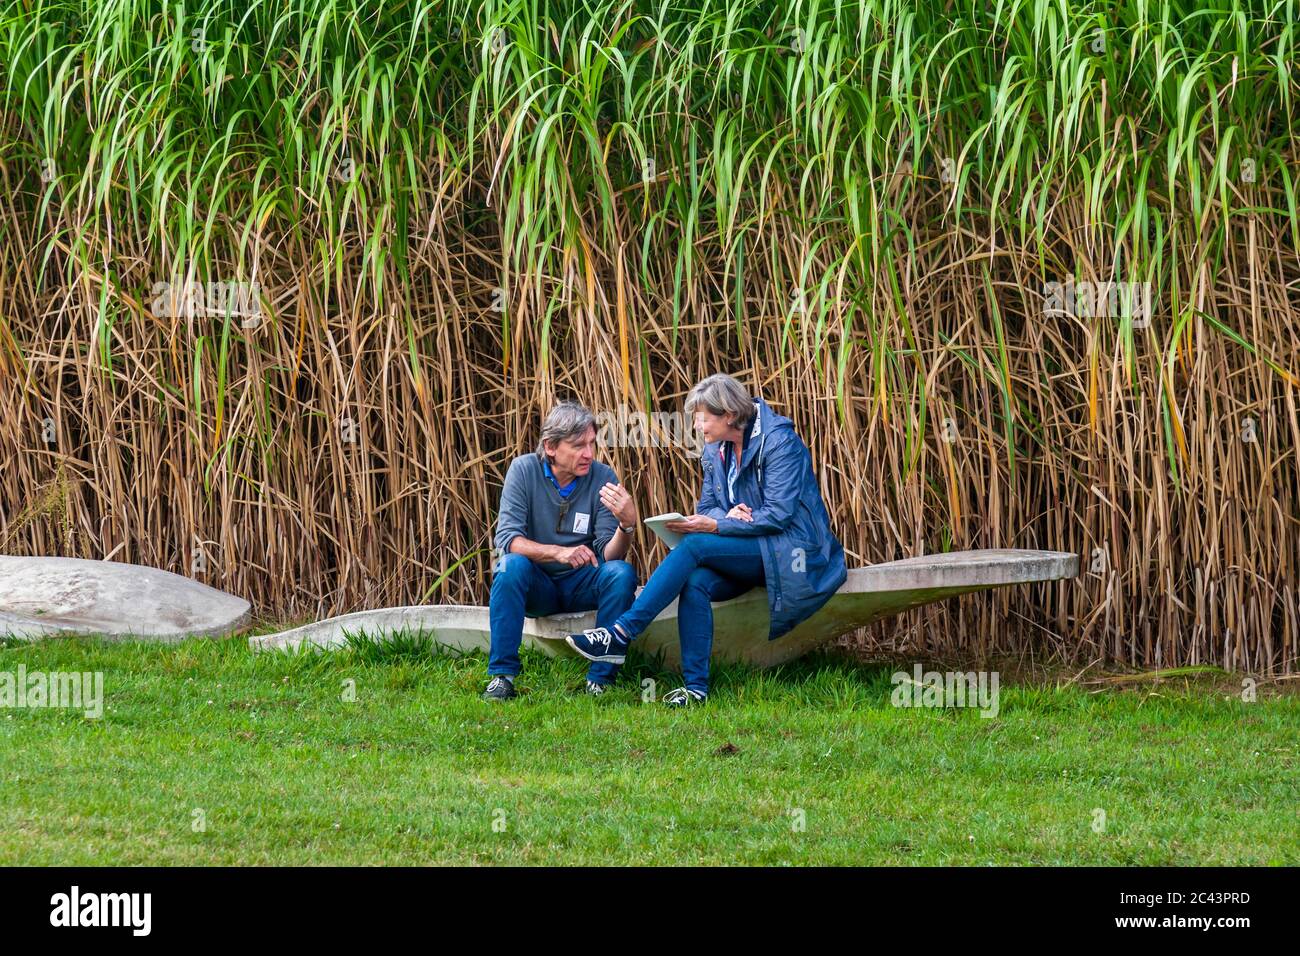 Una coppia seduta di fronte ad un campo di bambù è assalita in una conversazione. Concerto al castello di Dyck, Jüchen, Germania Foto Stock